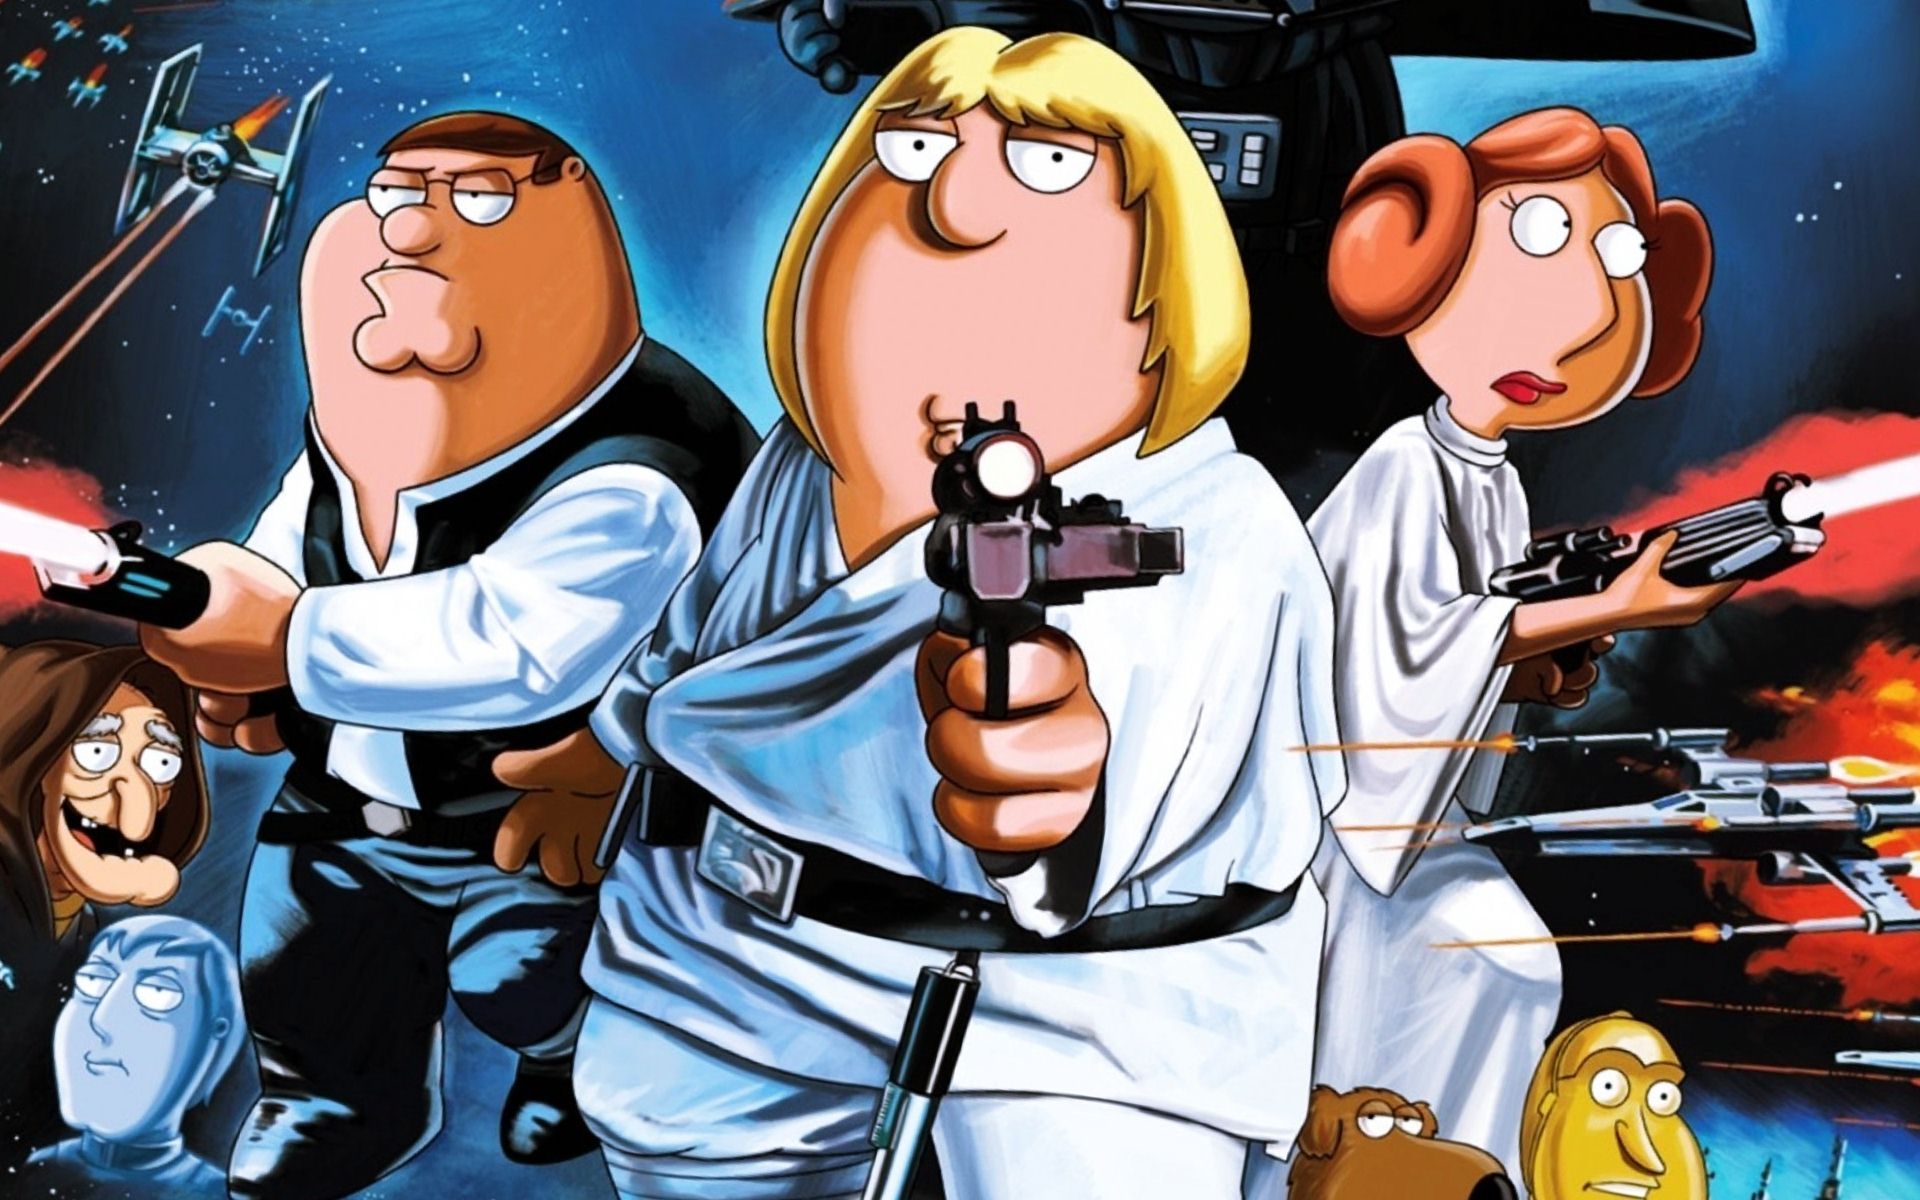 Wallpaper Of Family Guy